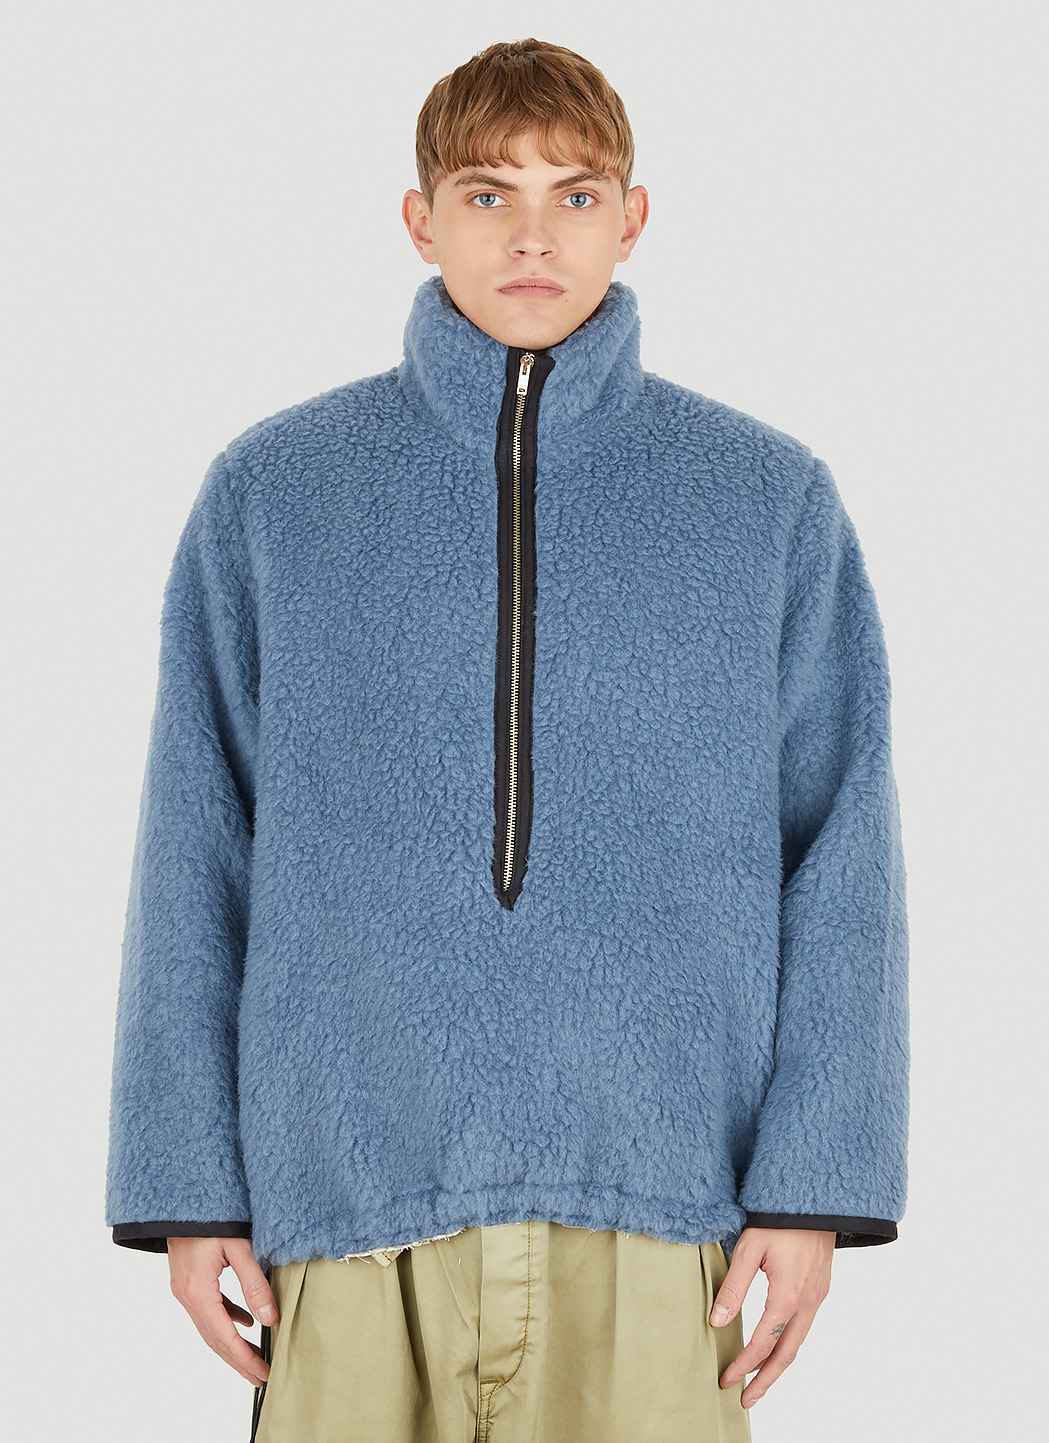 Camiel Fortgens Fleece Zip Sweatshirt in Blue | LN-CC®